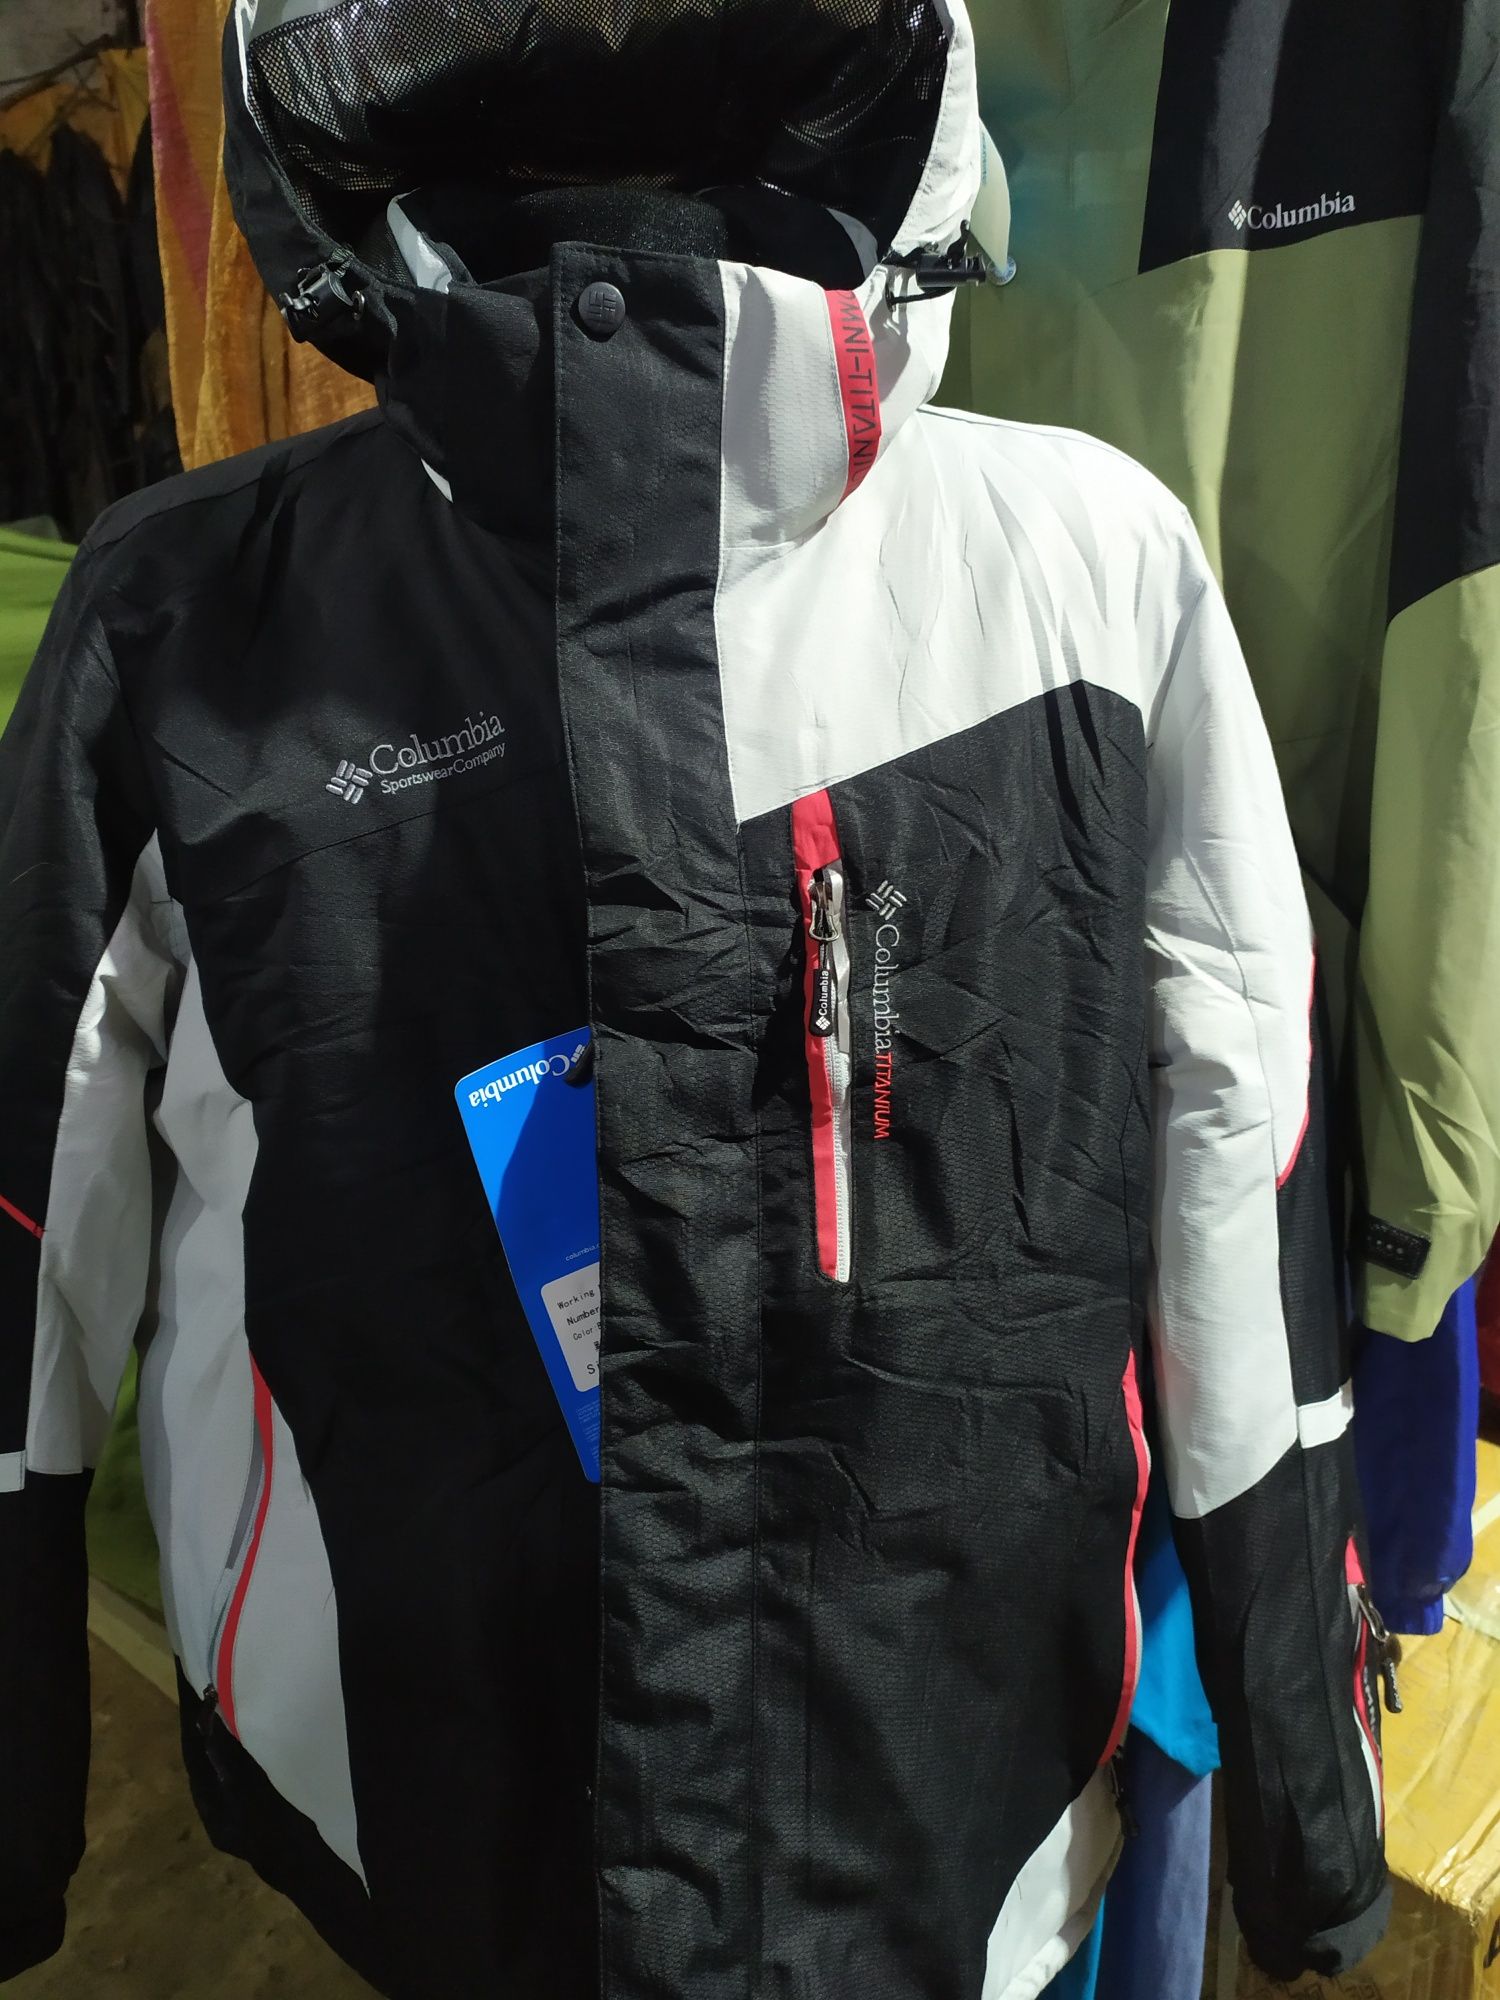 Продаюся горнолыжные куртки фирмы Asics, Columbia, The North Face.